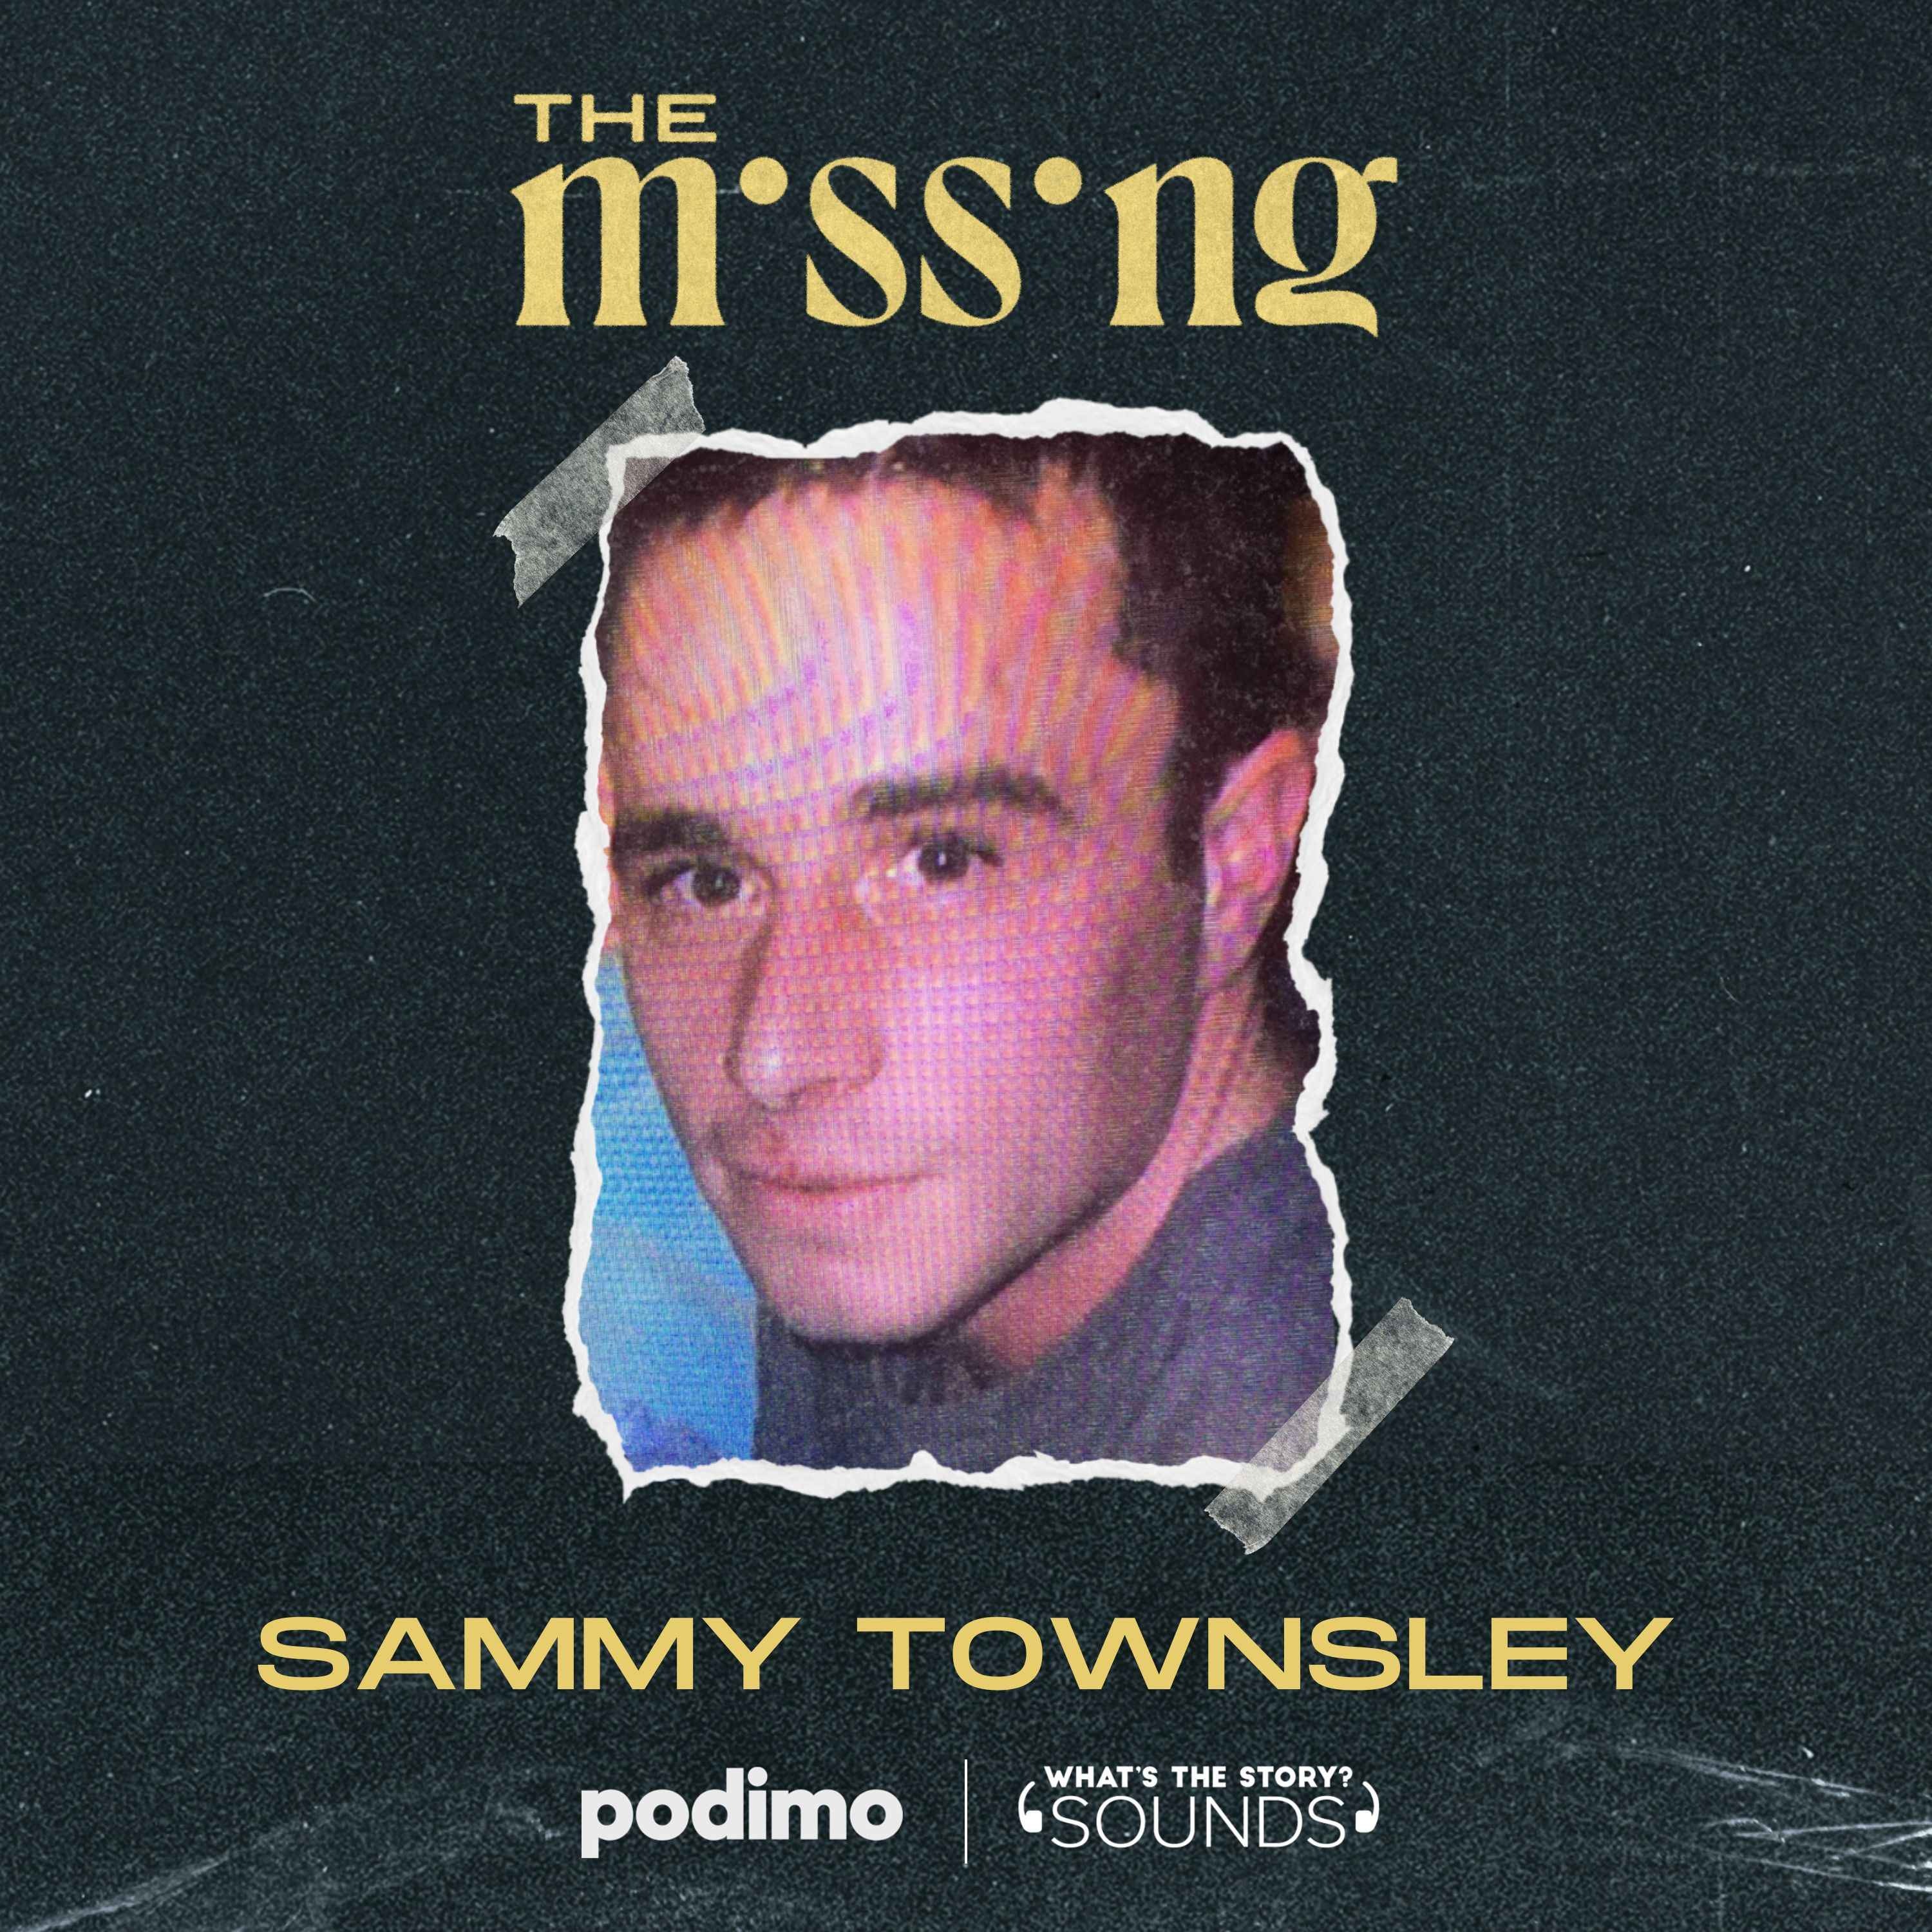 Sammy Townsley